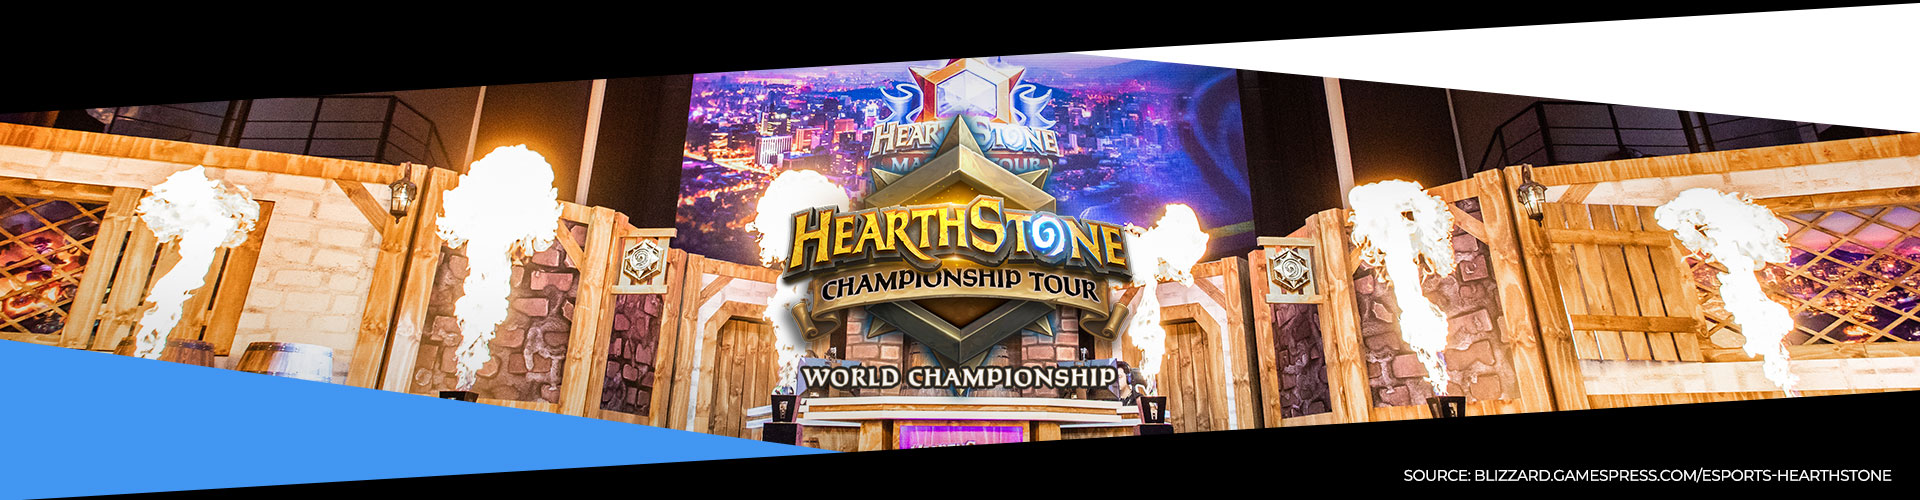 Eventsida för Hearthstone World Championship 2019, som är spelets världsmästerskap.